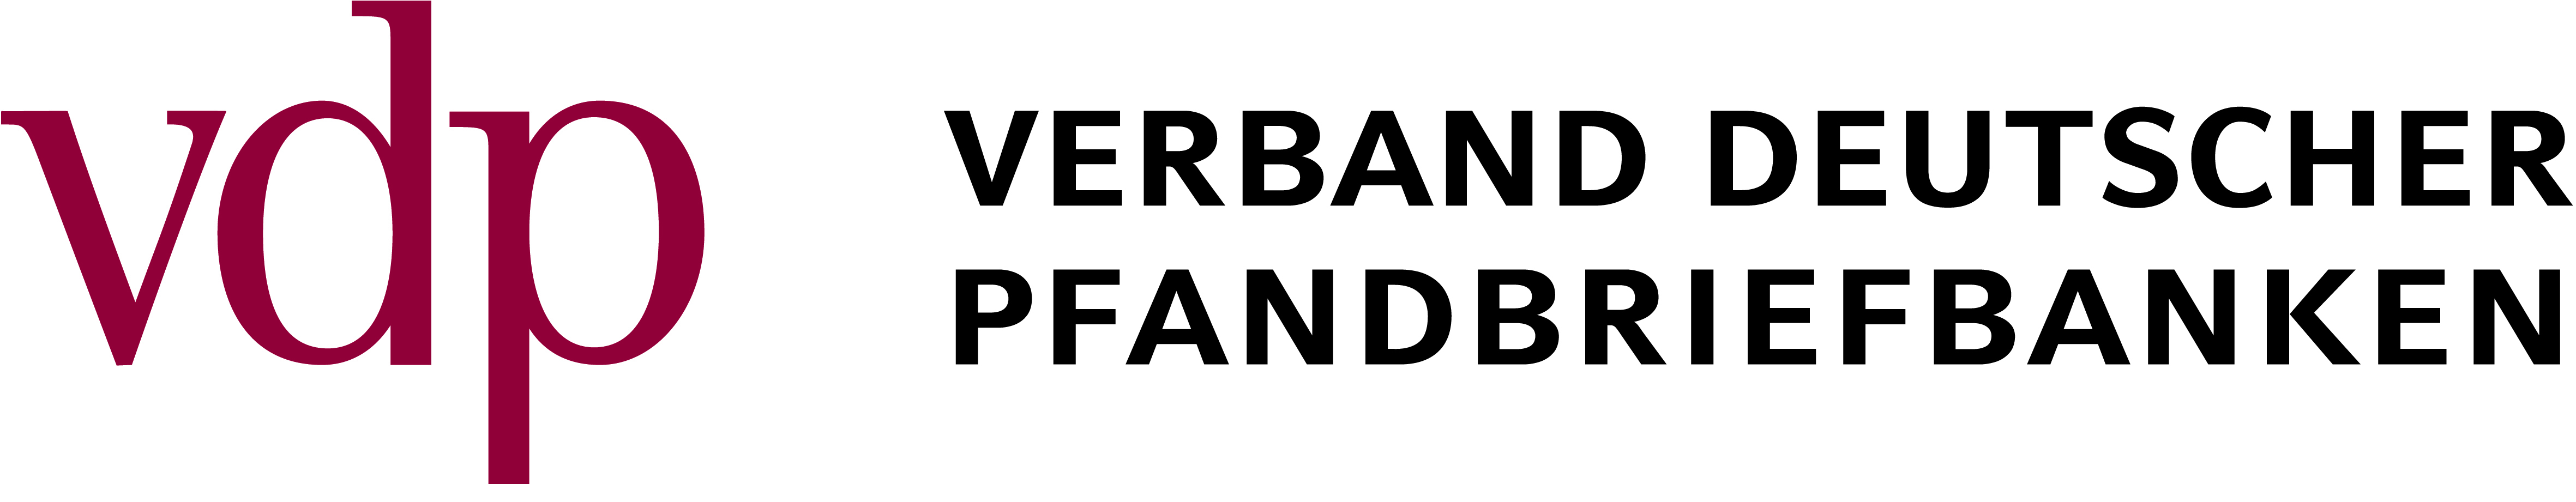 Verband Deutscher Pfandbriefbanken e.V., Berlin